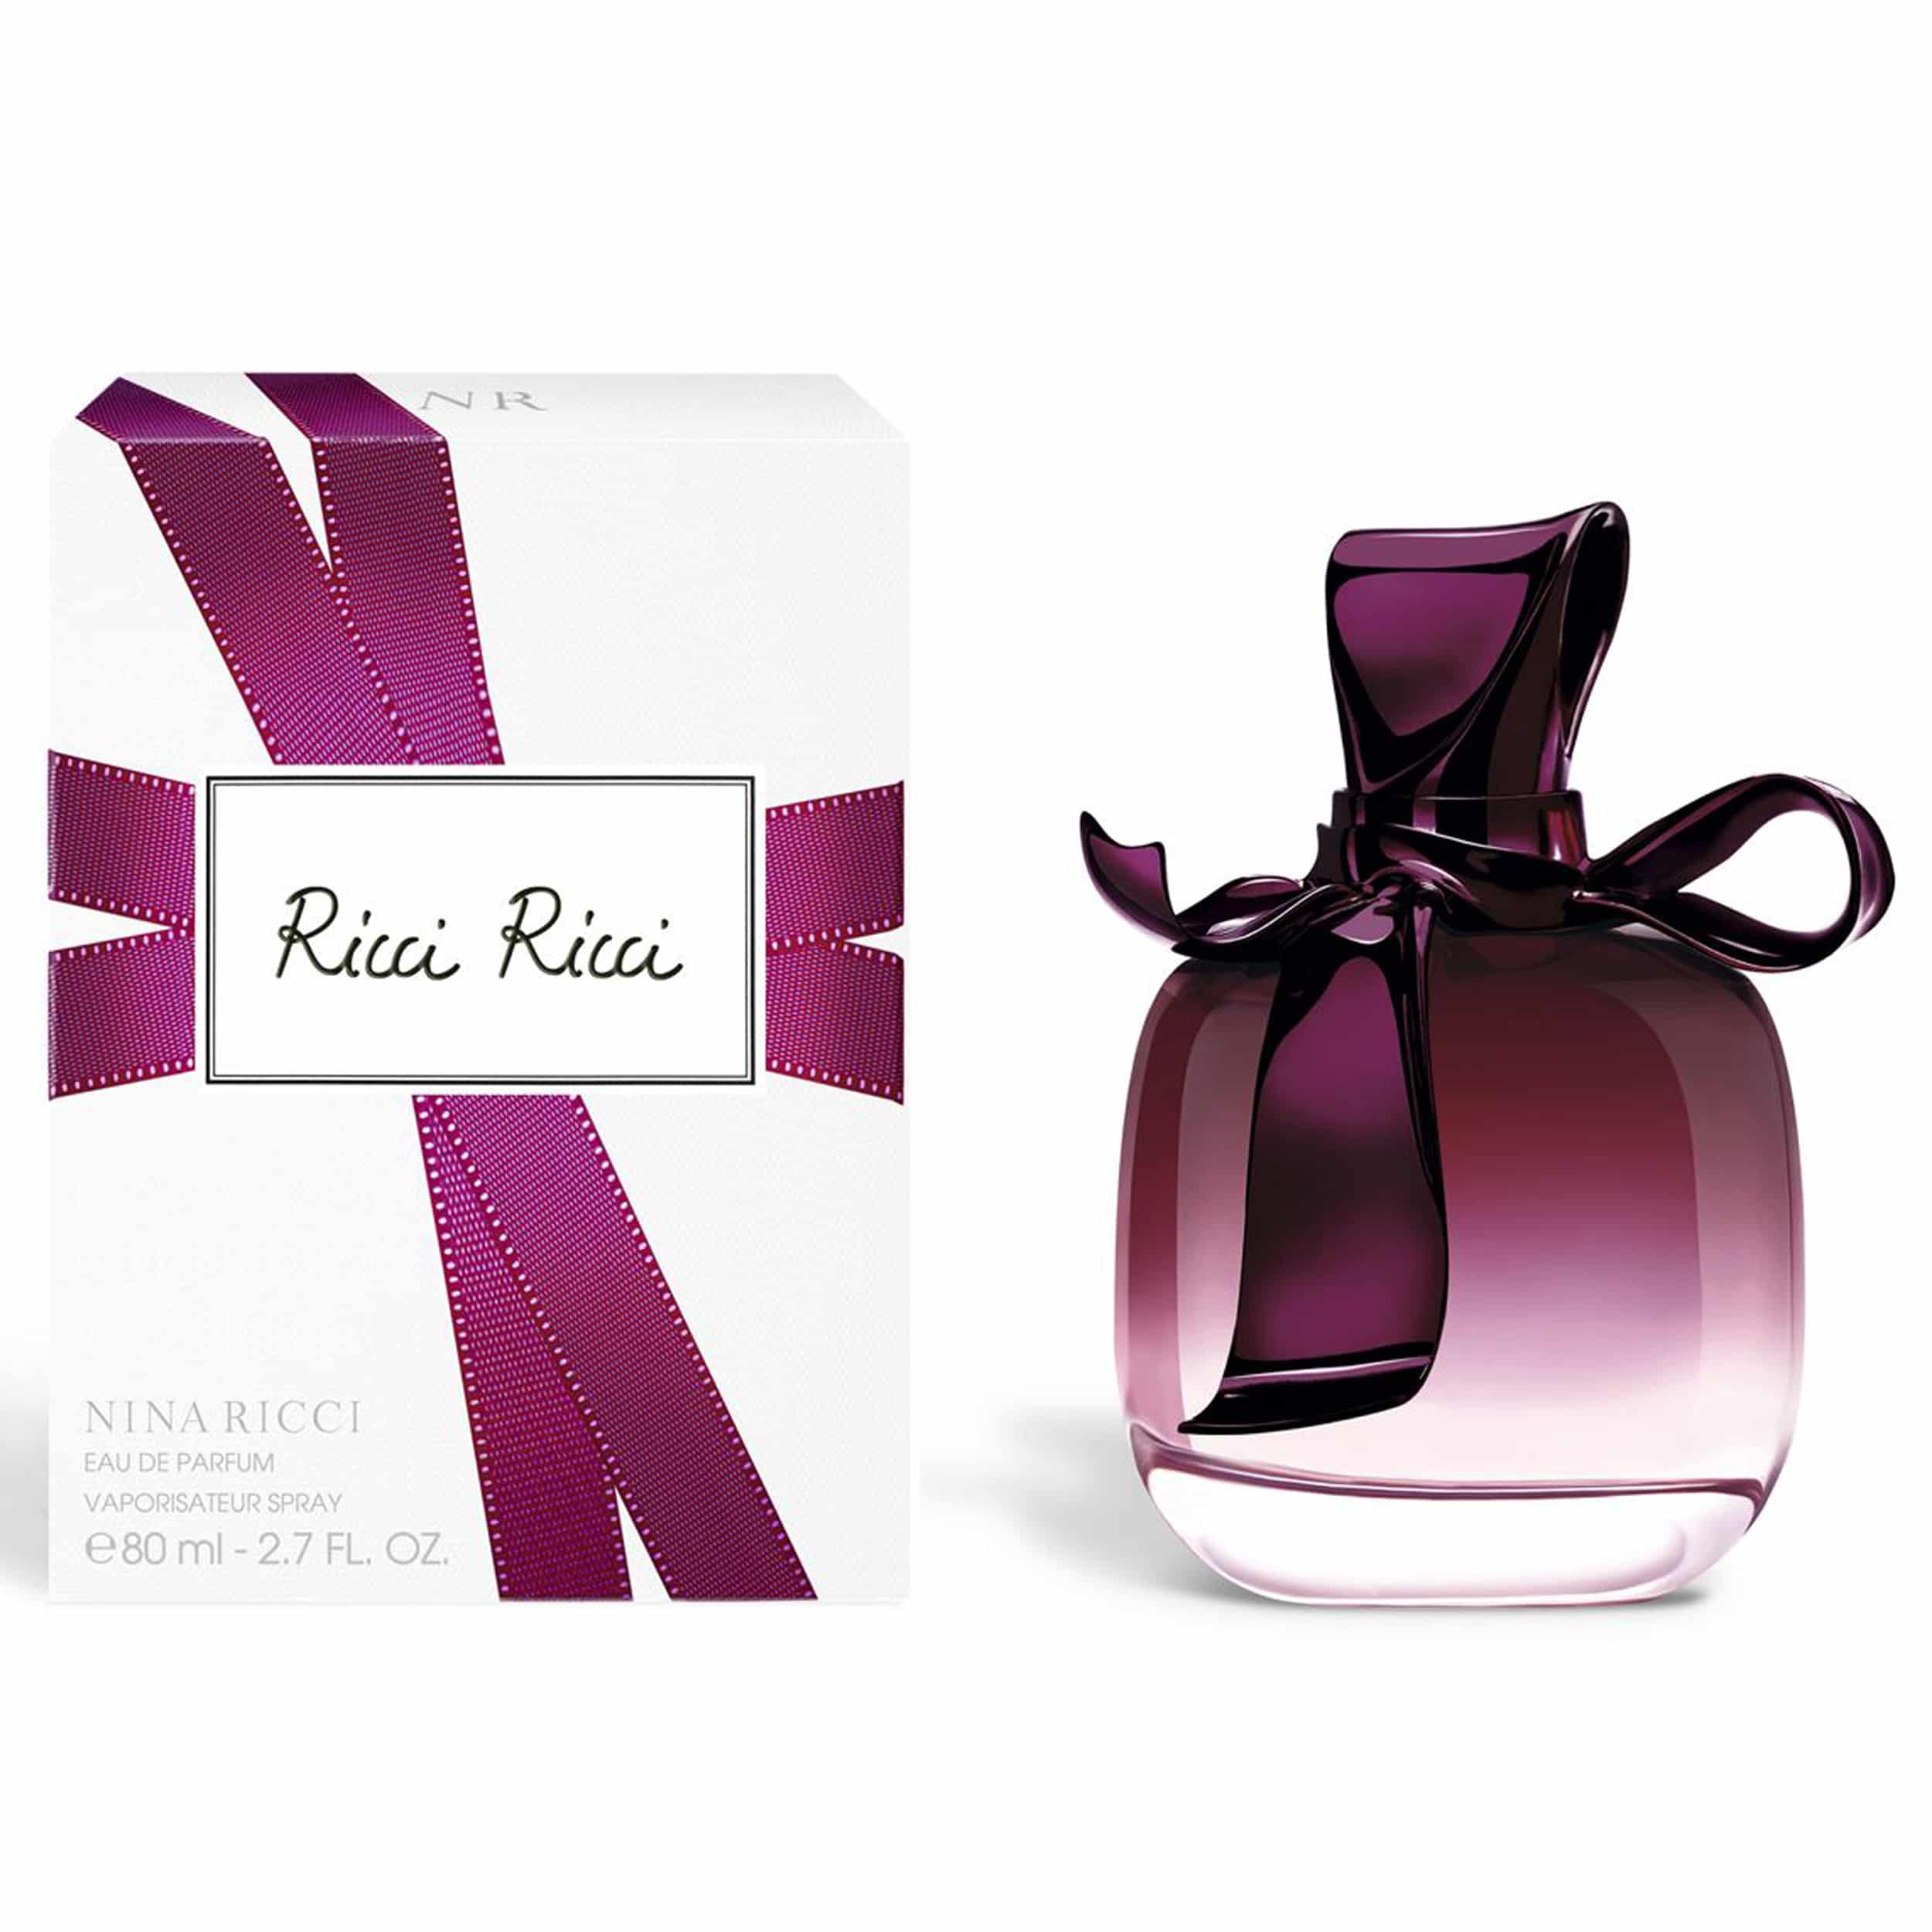 África repollo Categoría RICCI RICCI DE NINA RICCI - Colonia / Perfume - Eau de Parfum Natural Spray  80 ml